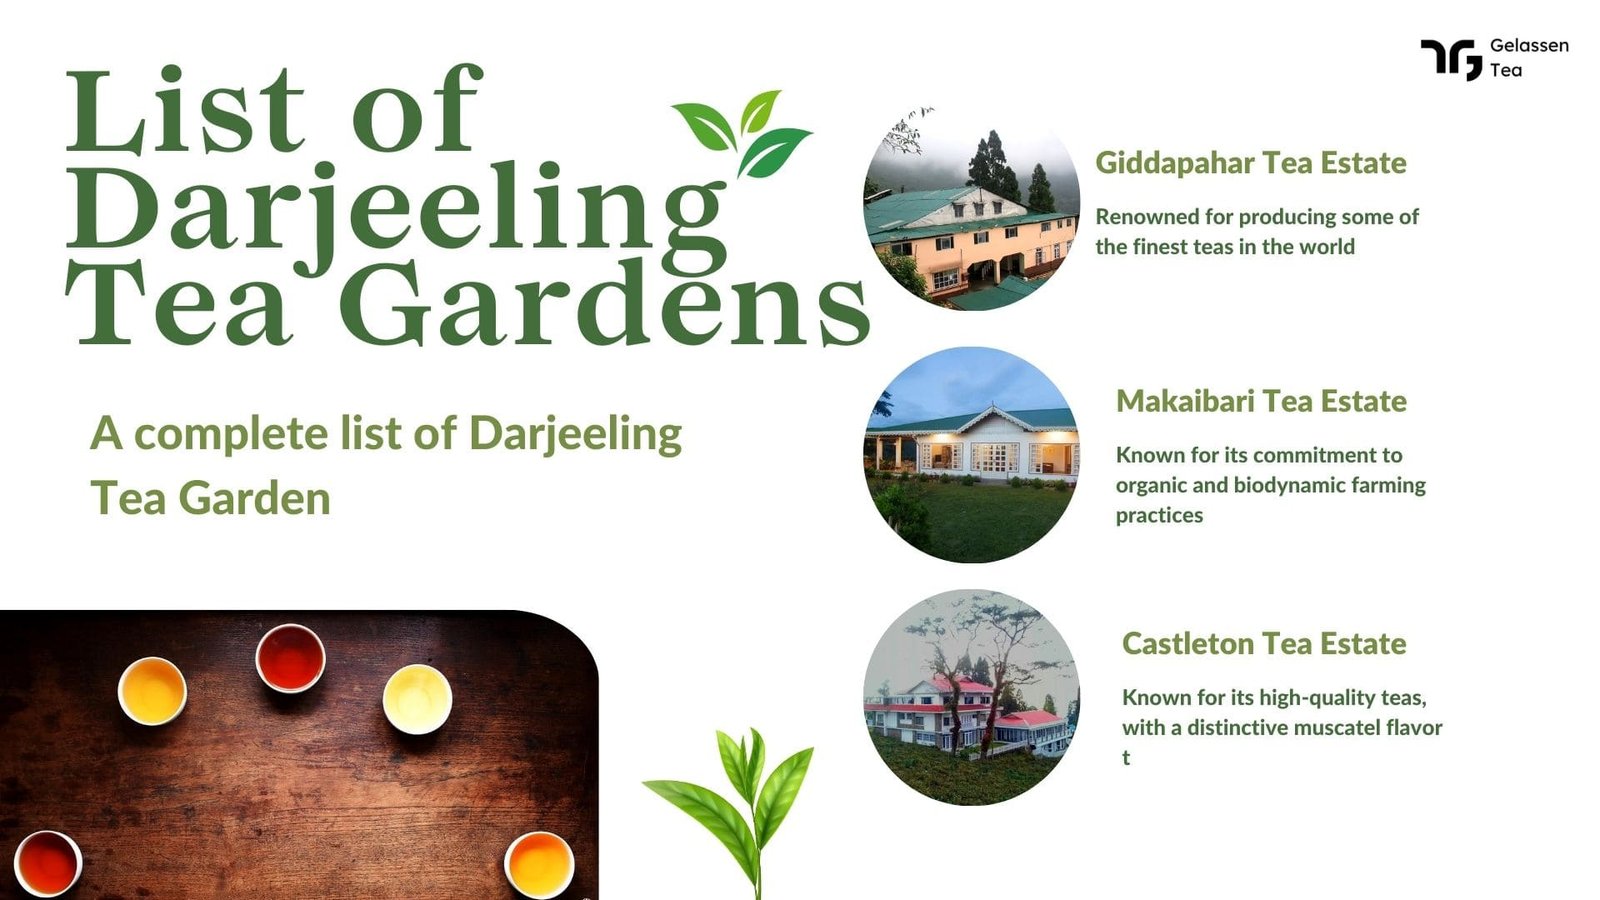 List of darjeeling tea gardens